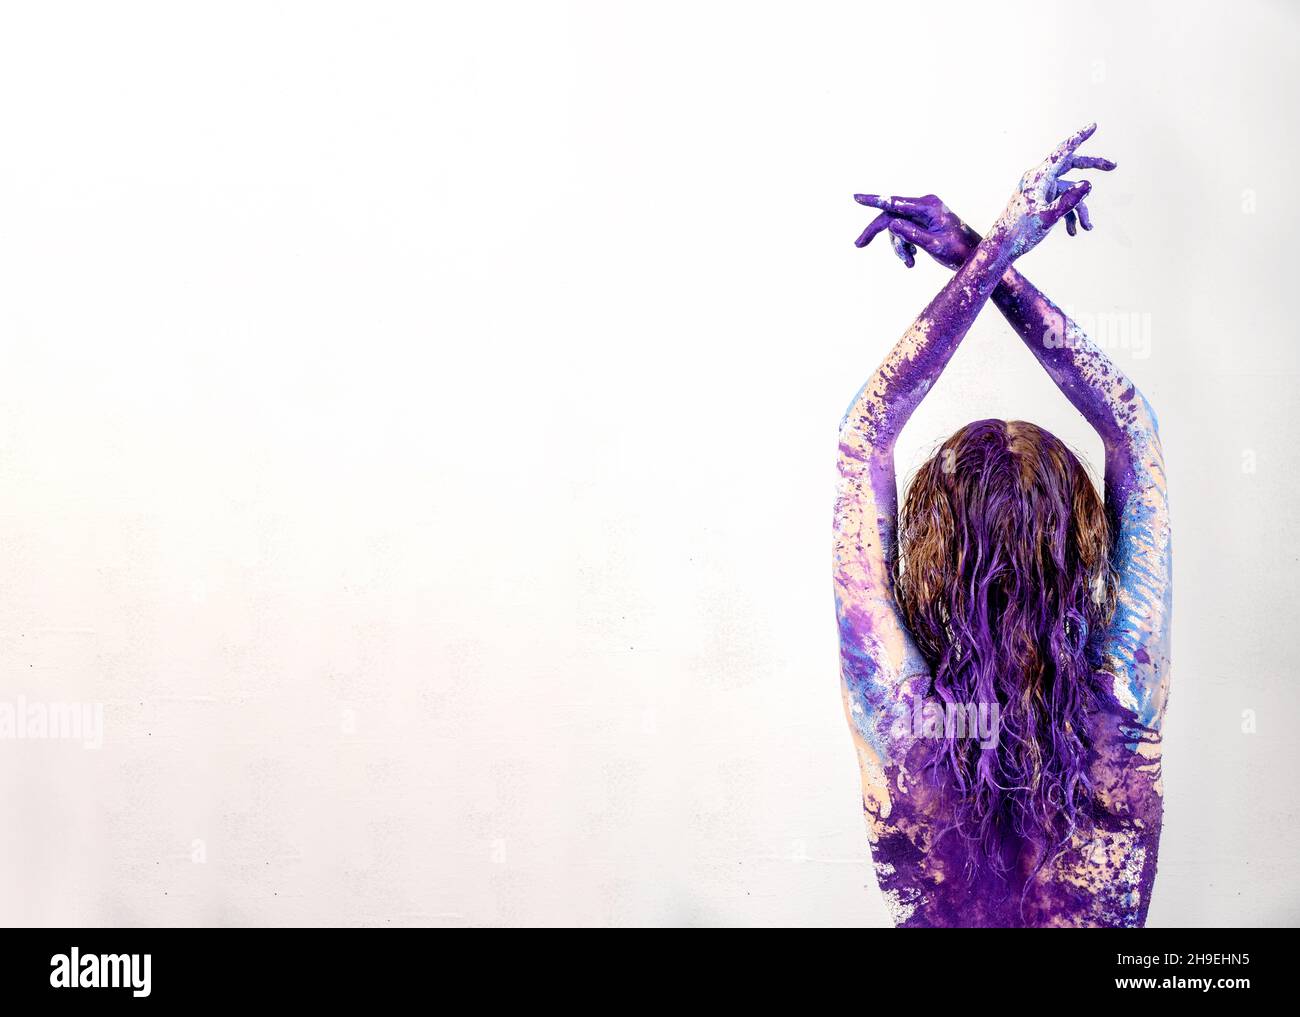 Vista posterior y brazos levantados cruzados de joven mujer artísticamente abstracta pintada, bailarina con blanco, azul y púrpura, pintura violeta, arte creativo del cuerpo Foto de stock